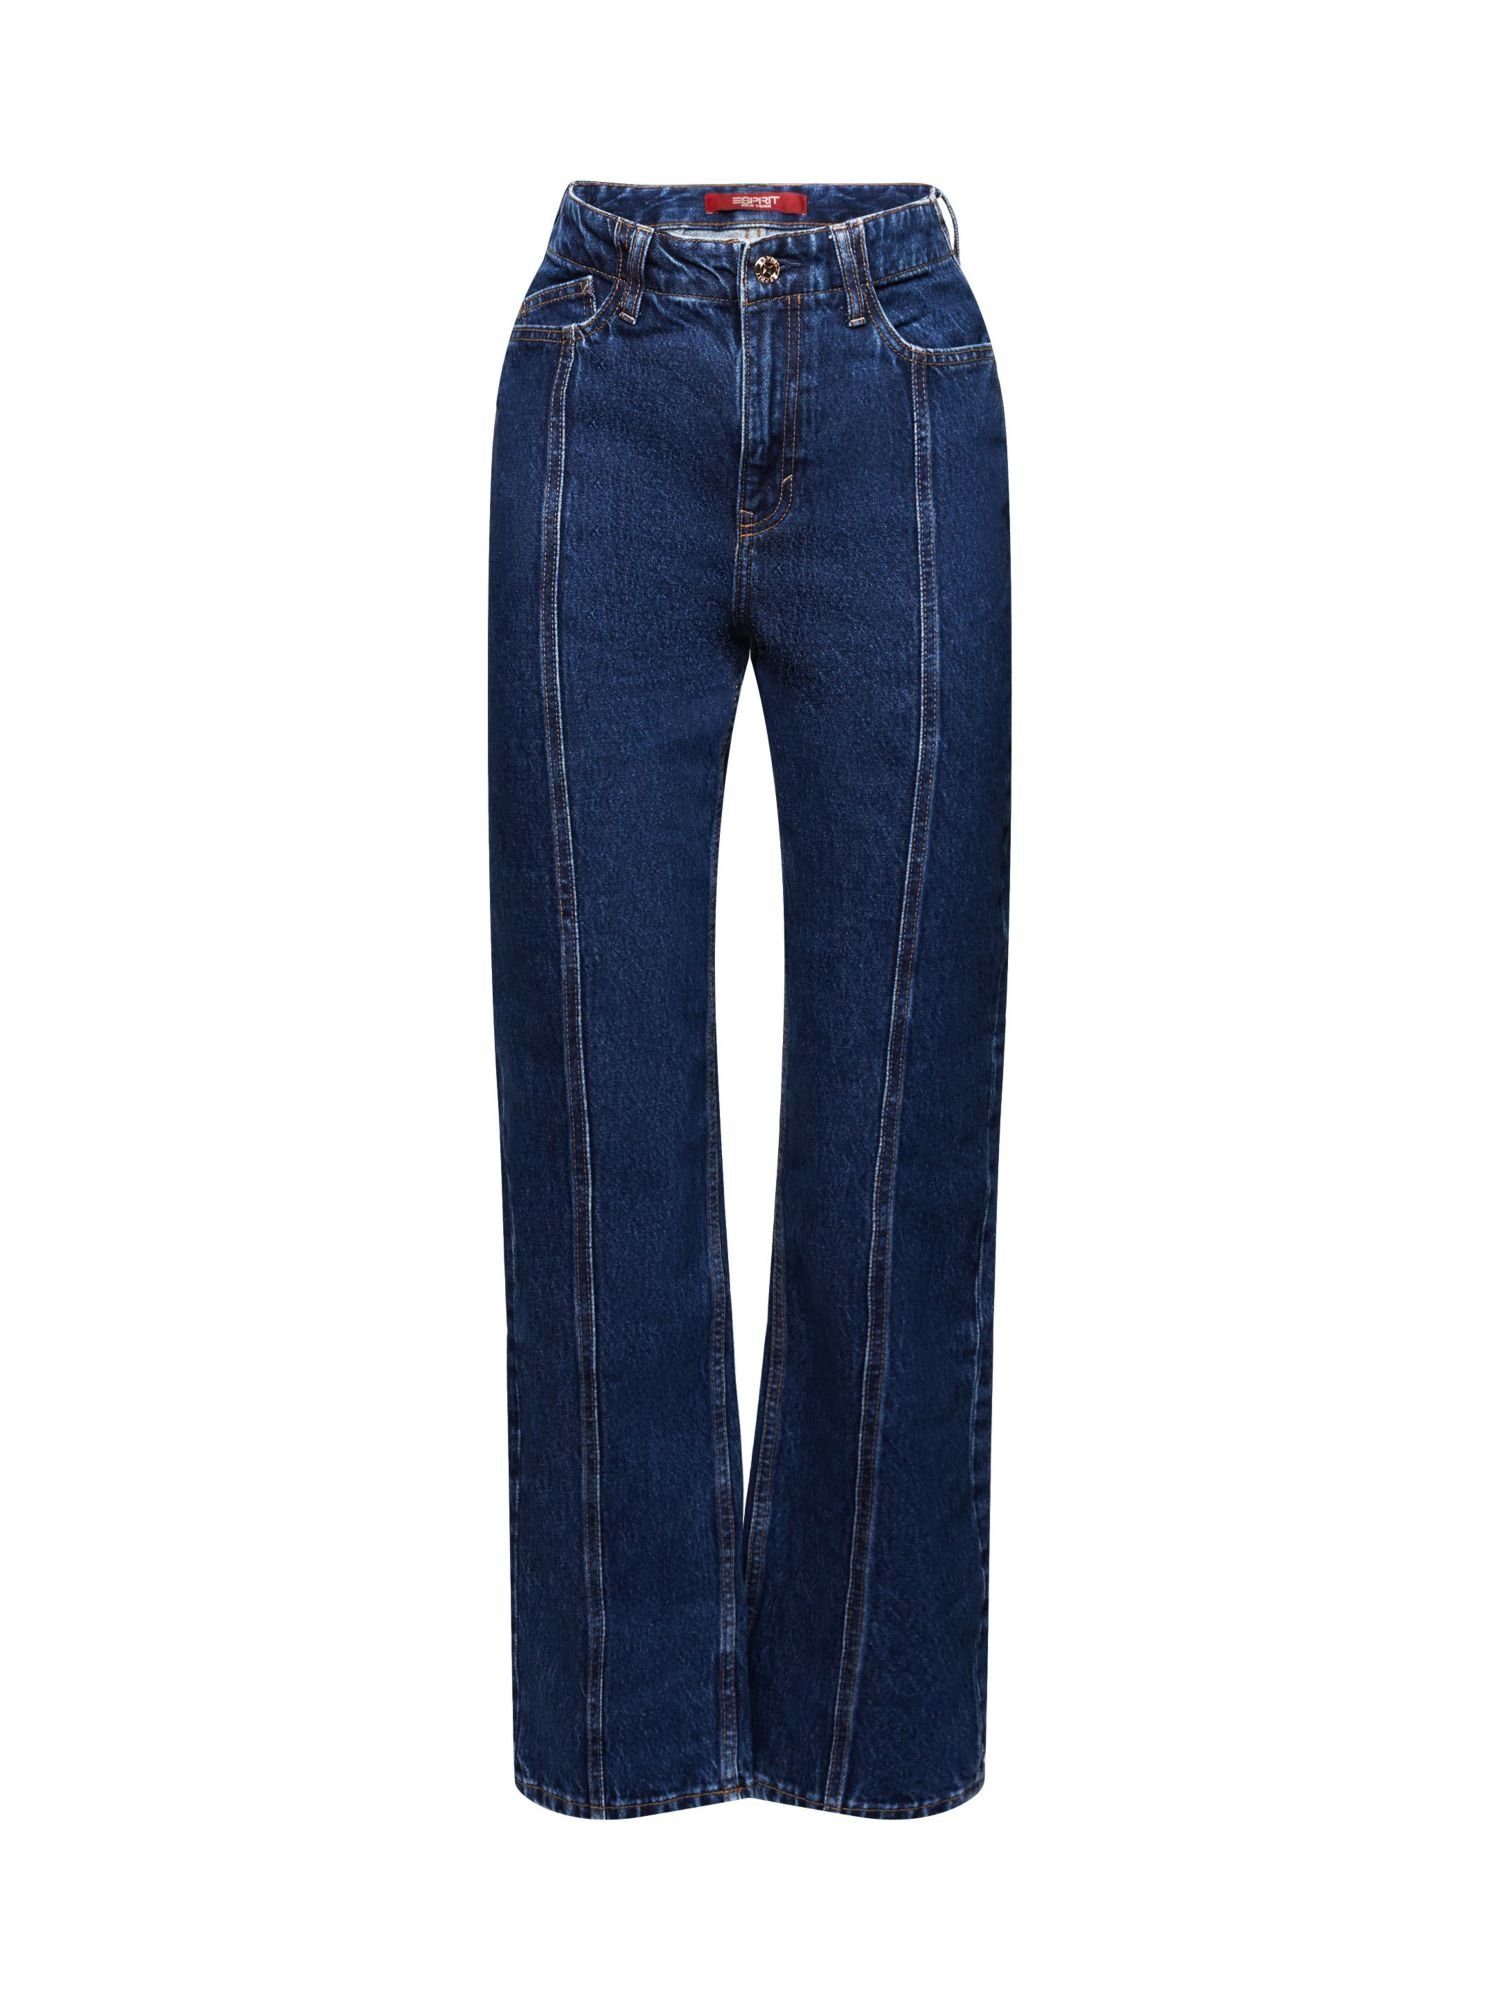 Esprit Bequeme Jeans Jeans mit gerader Passform und hohem Bund | Straight-Fit Jeans